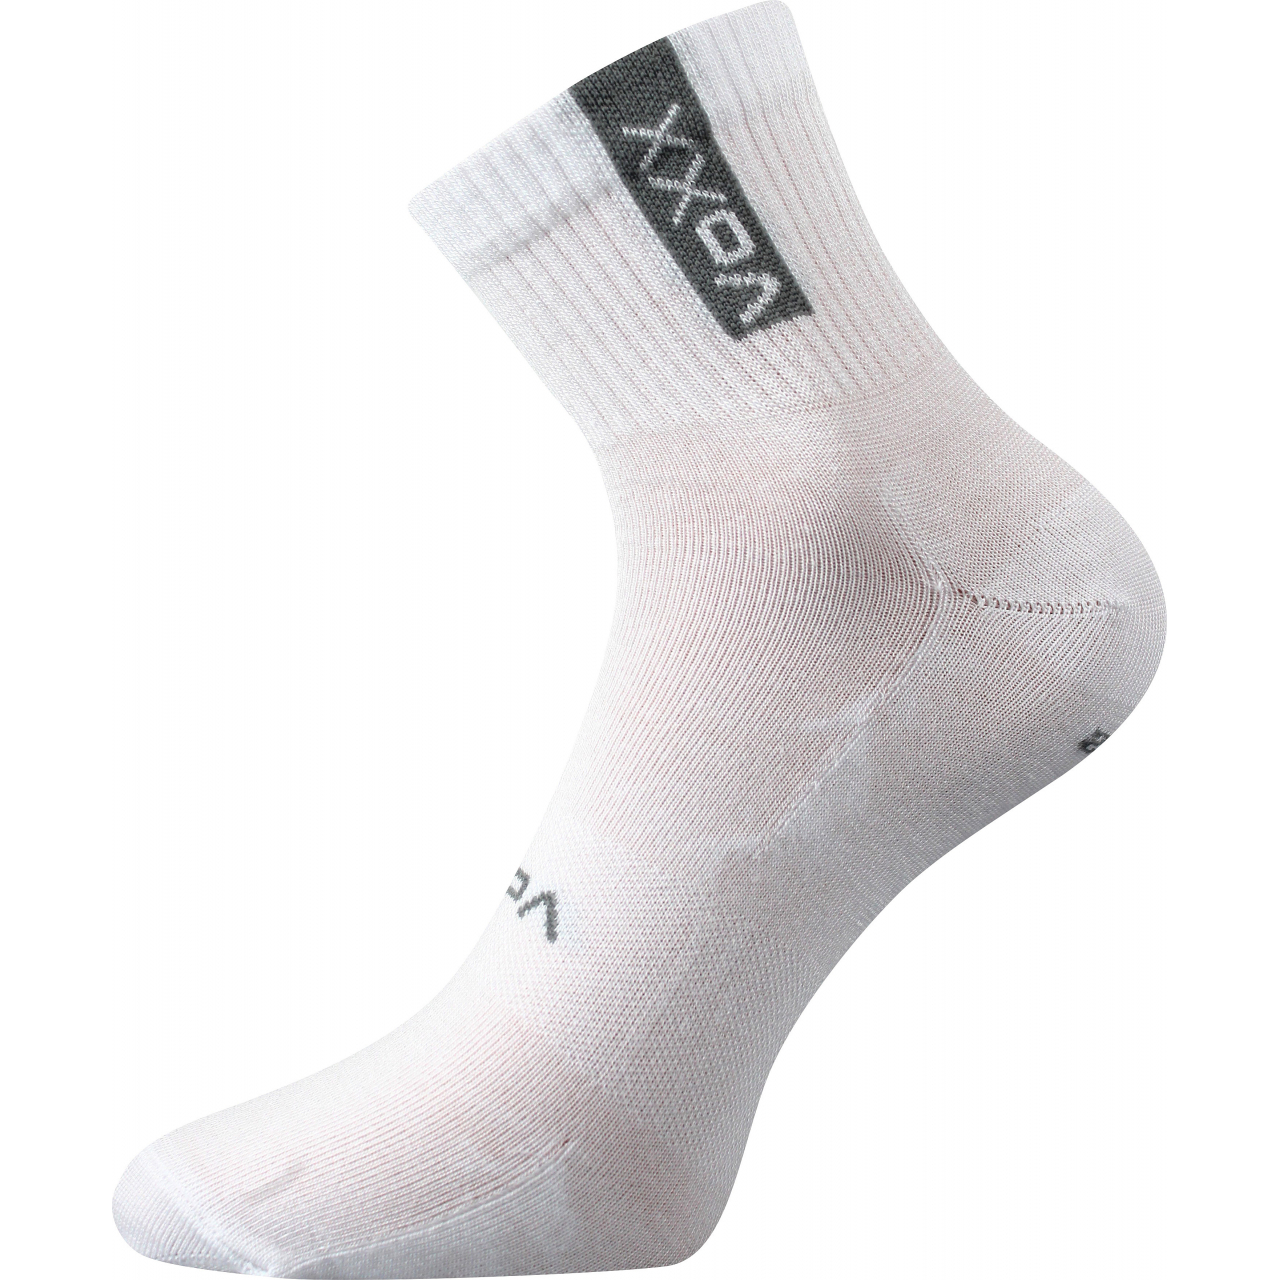 Ponožky sportovní unisex Voxx Brox - bílé, 43-46